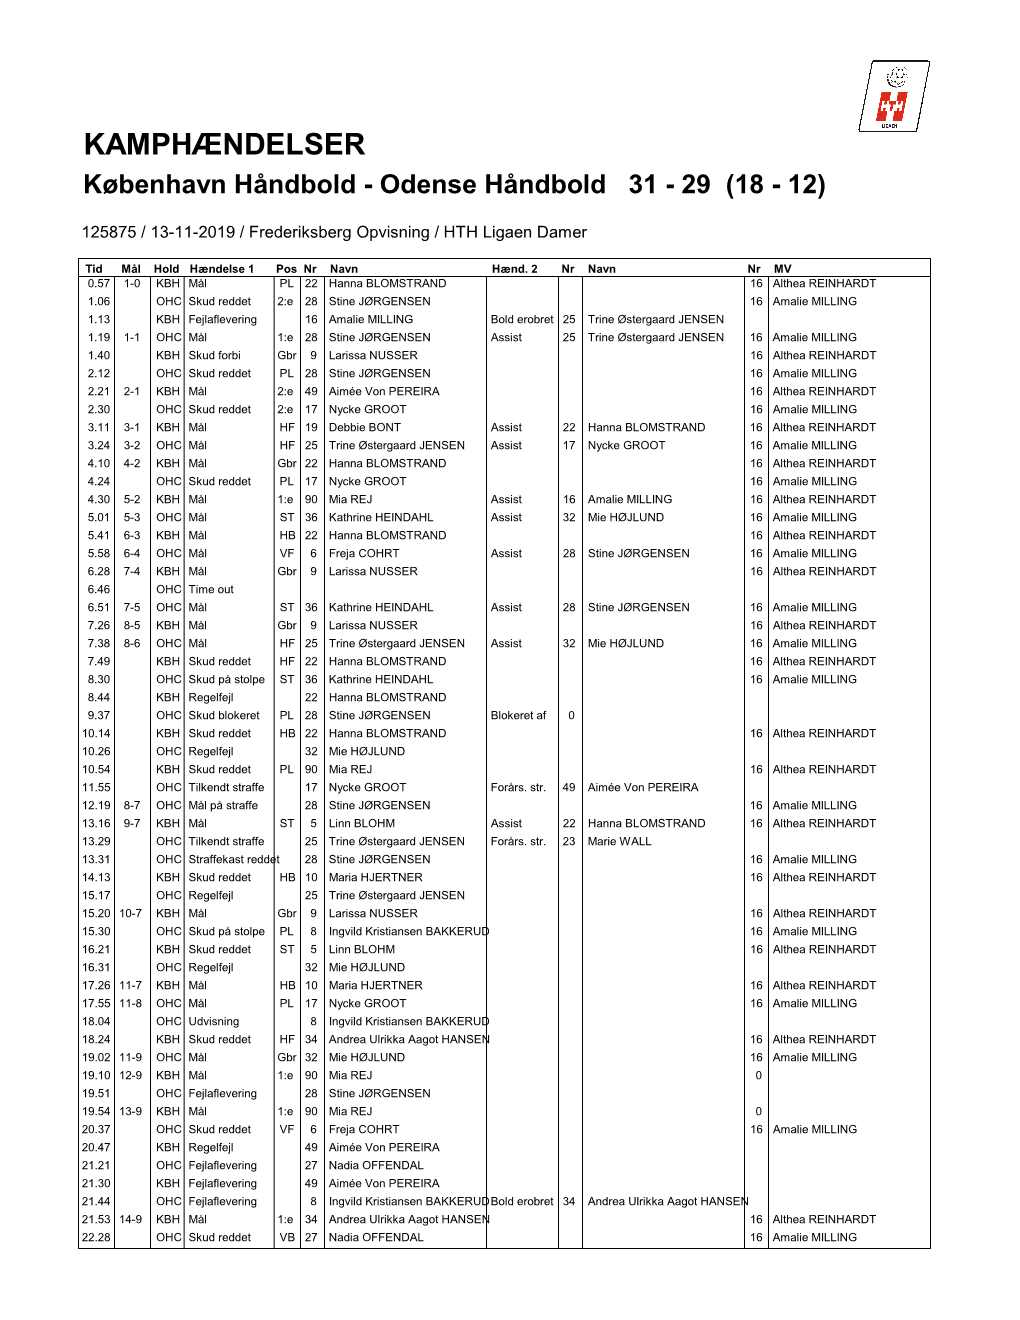 KAMPHÆNDELSER København Håndbold - Odense Håndbold 31 - 29 (18 - 12)